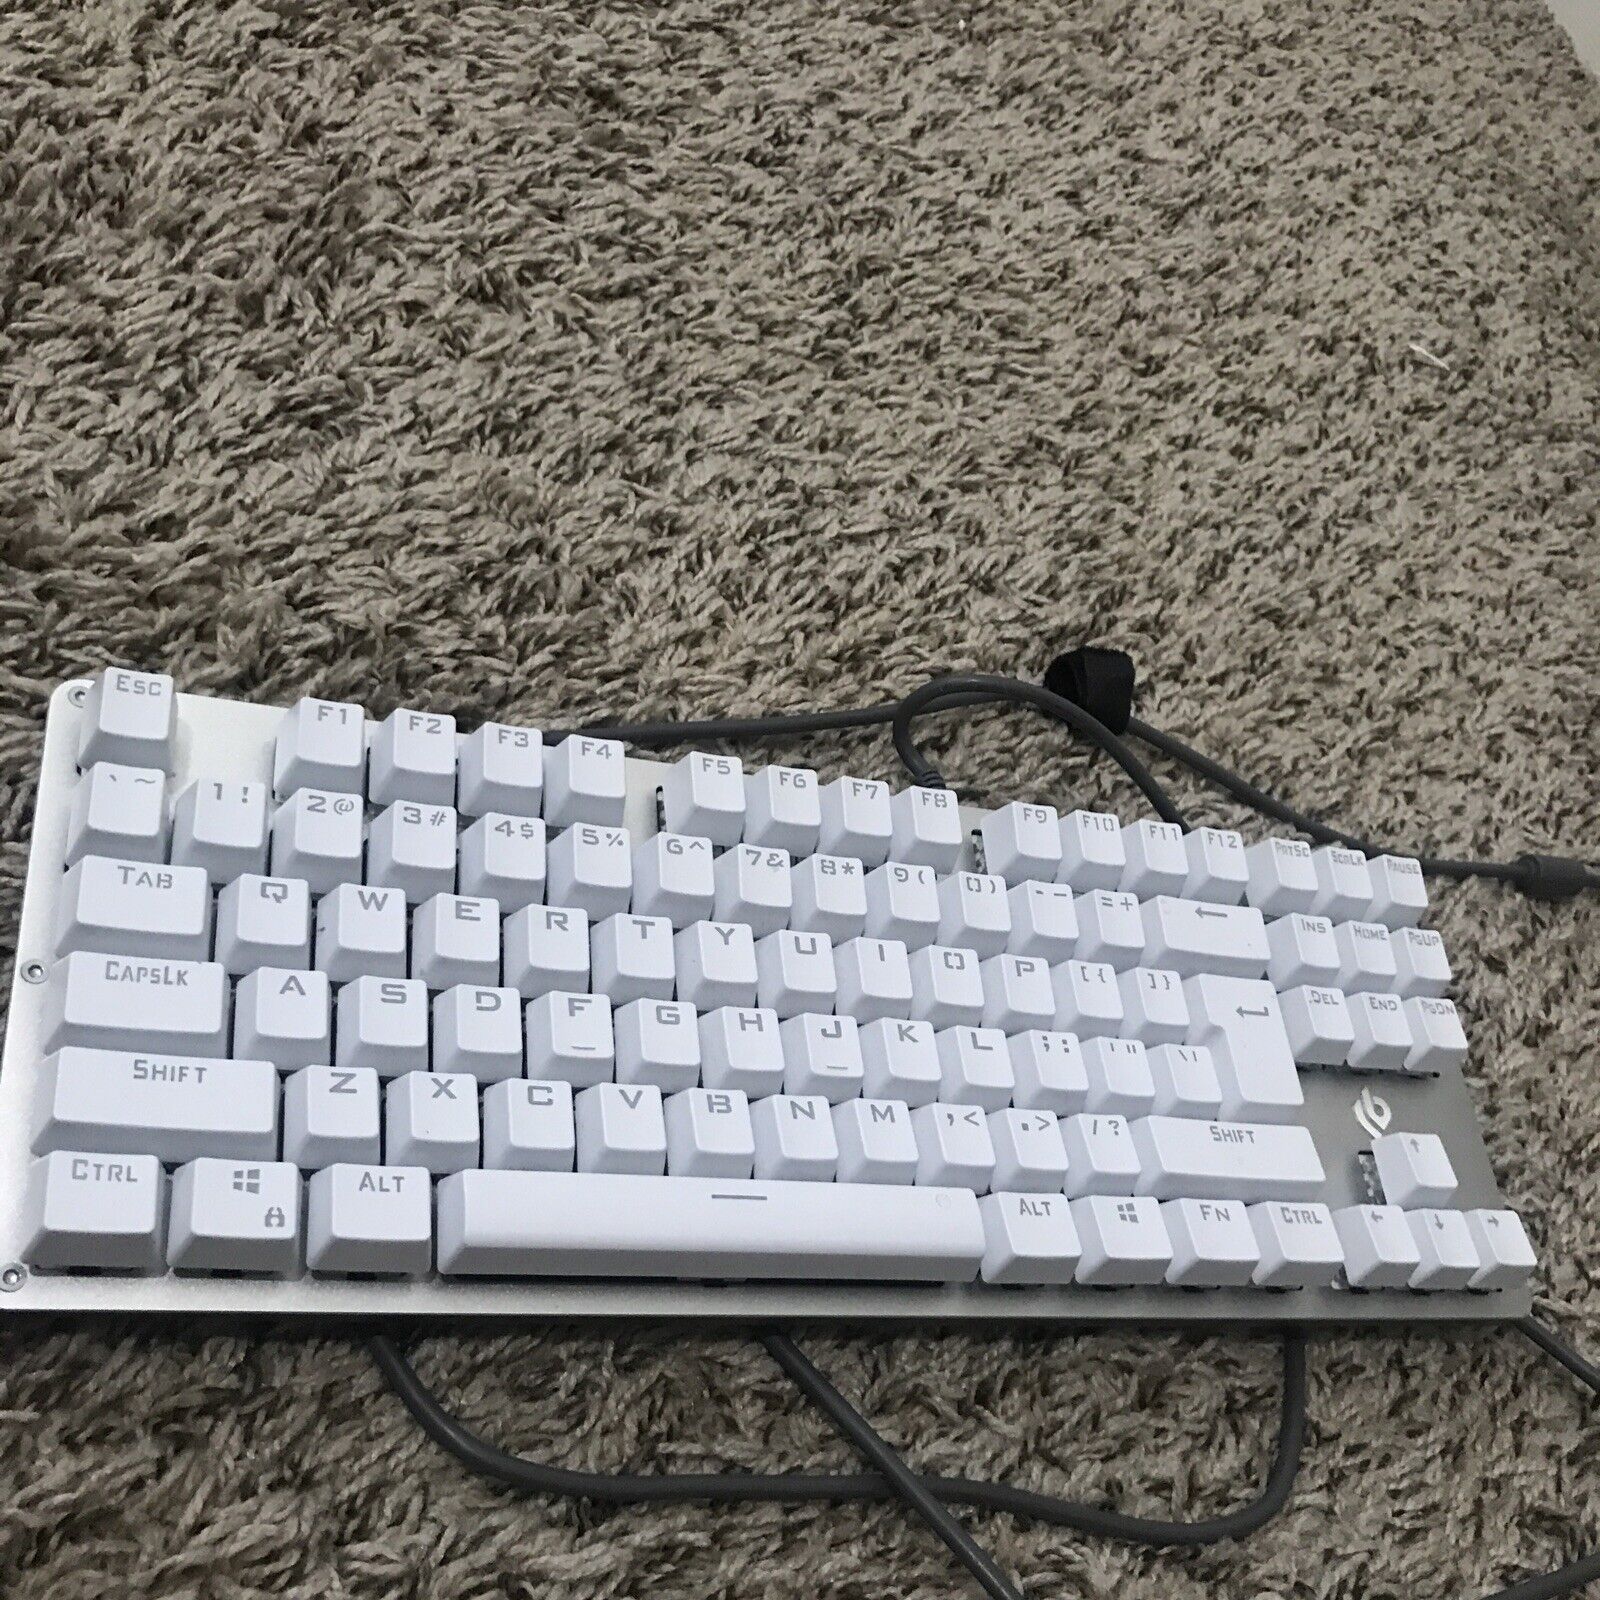 Leobog K21 Mechanical Gaming Keyboard White Razer Nvidia Asus Omen ROG Corsair